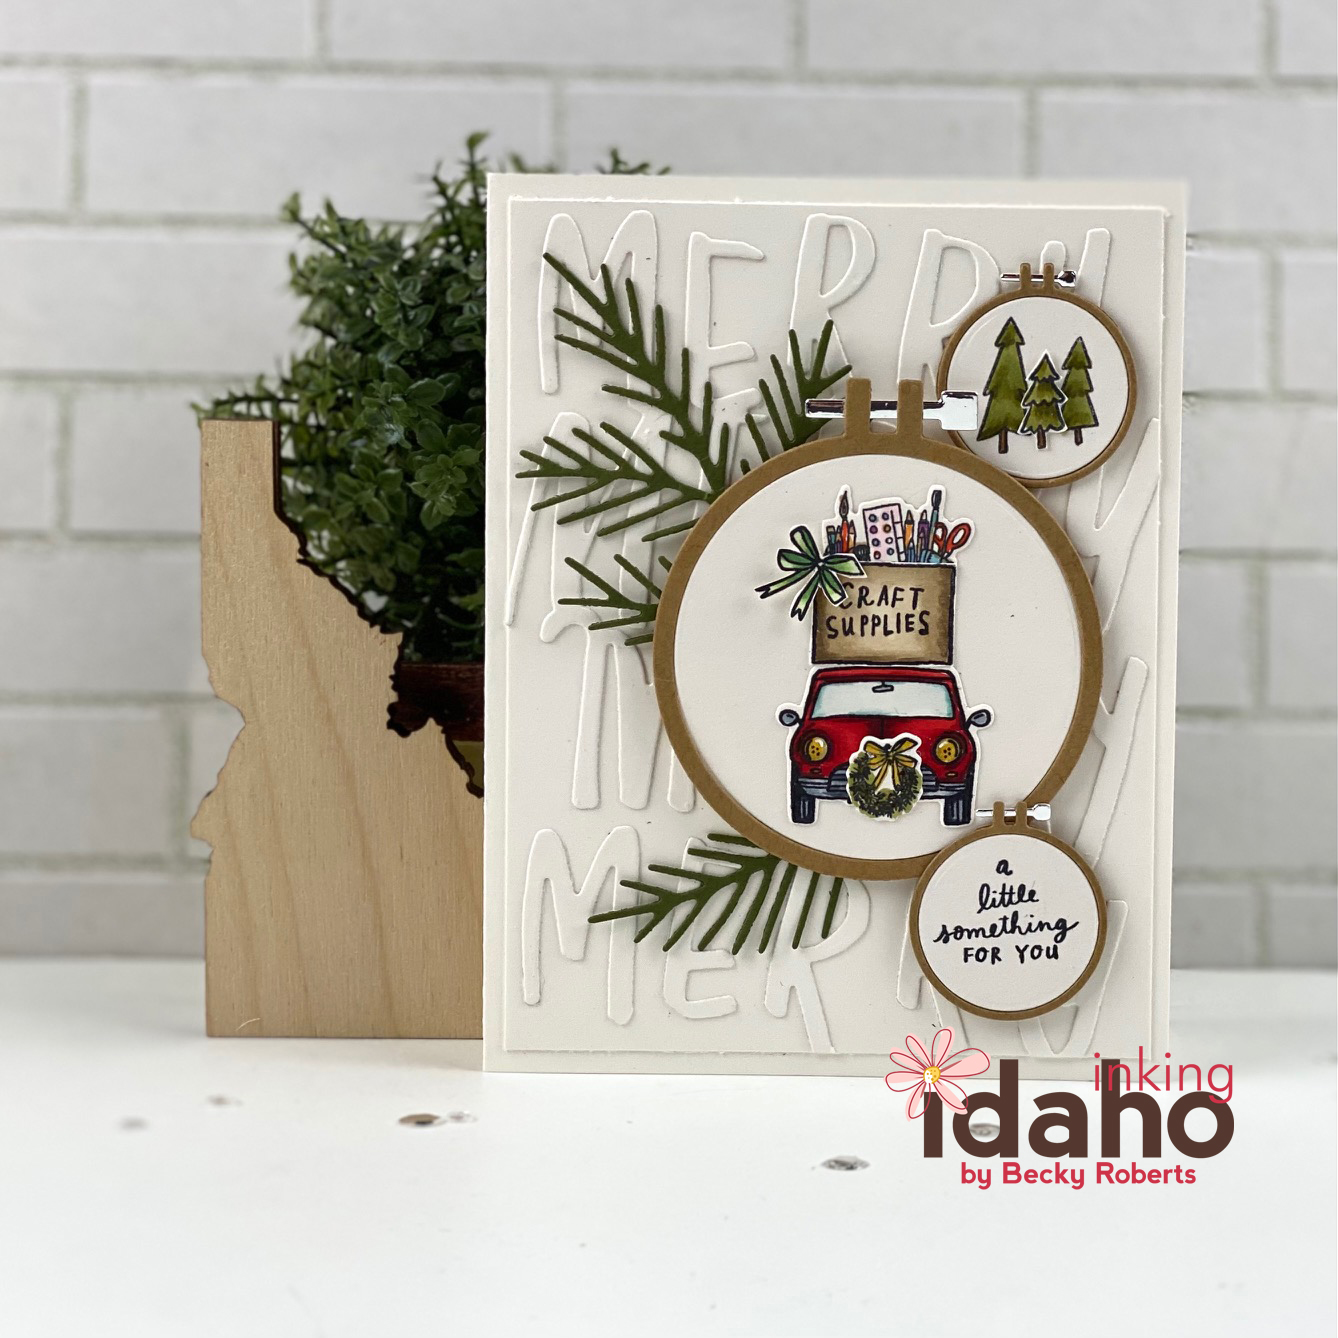 Inking Idaho: Leaflets Thank You Cards